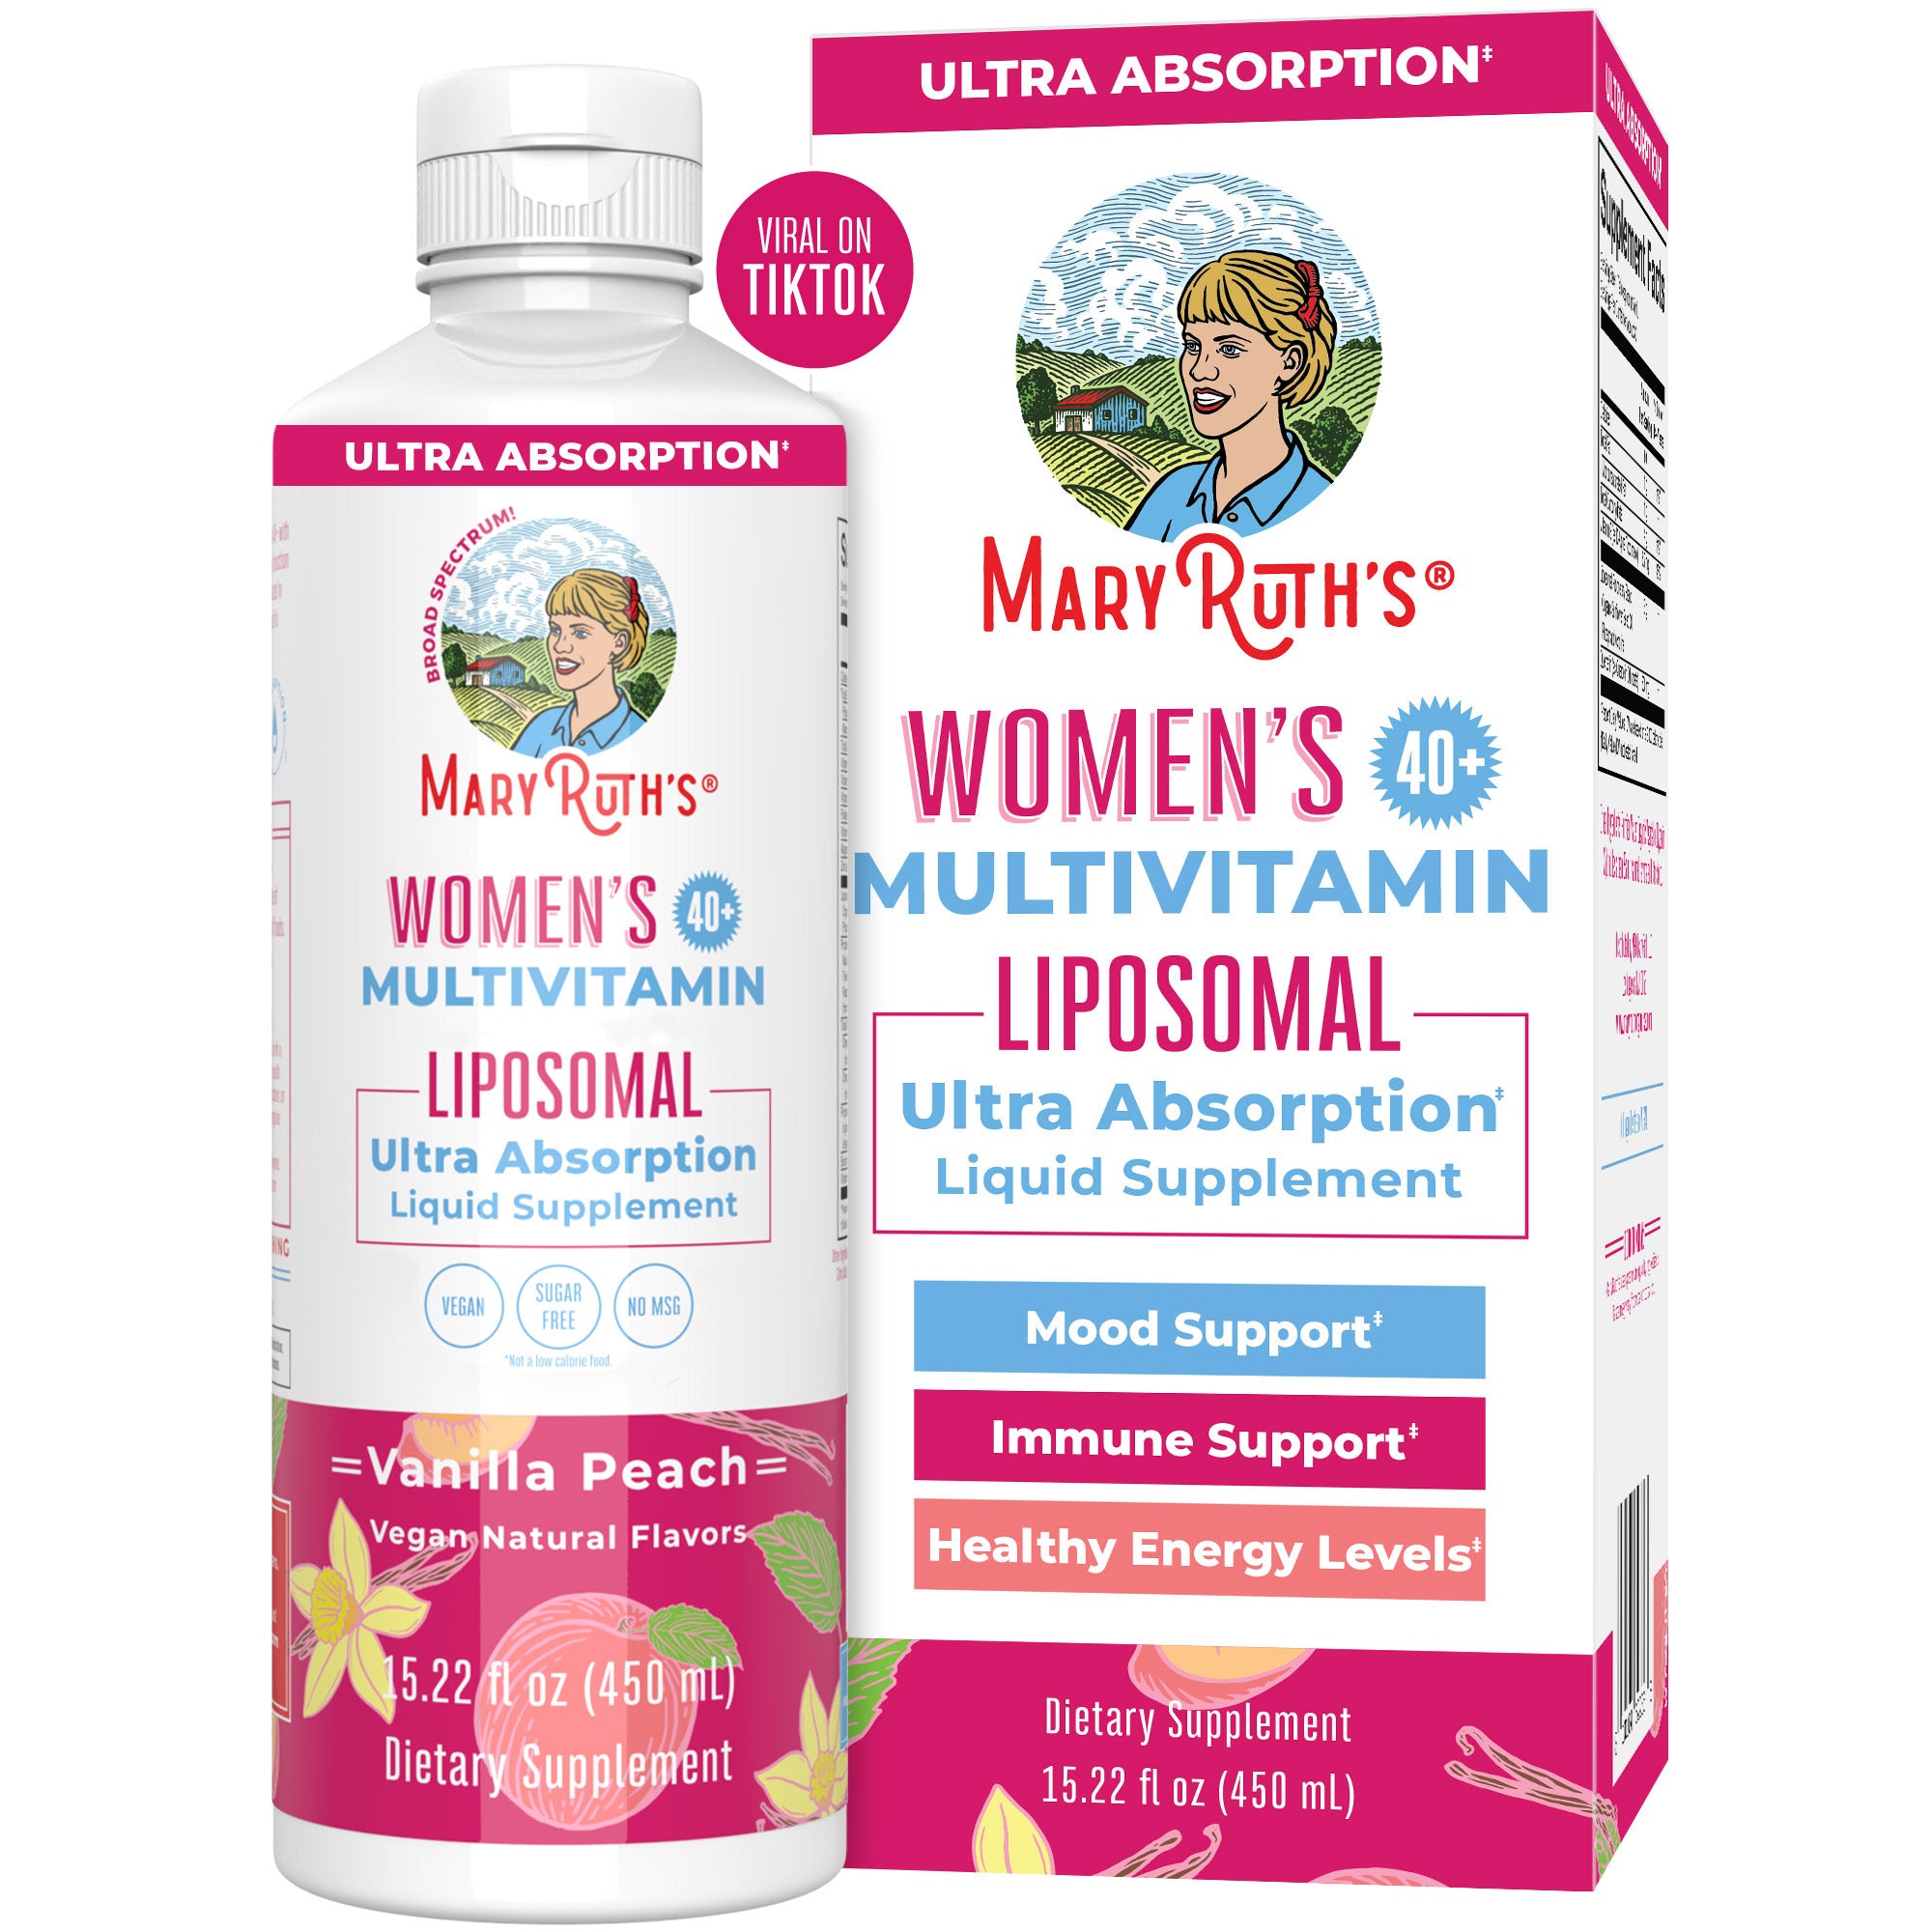 Women's 40+ Multivitamin Liposomal